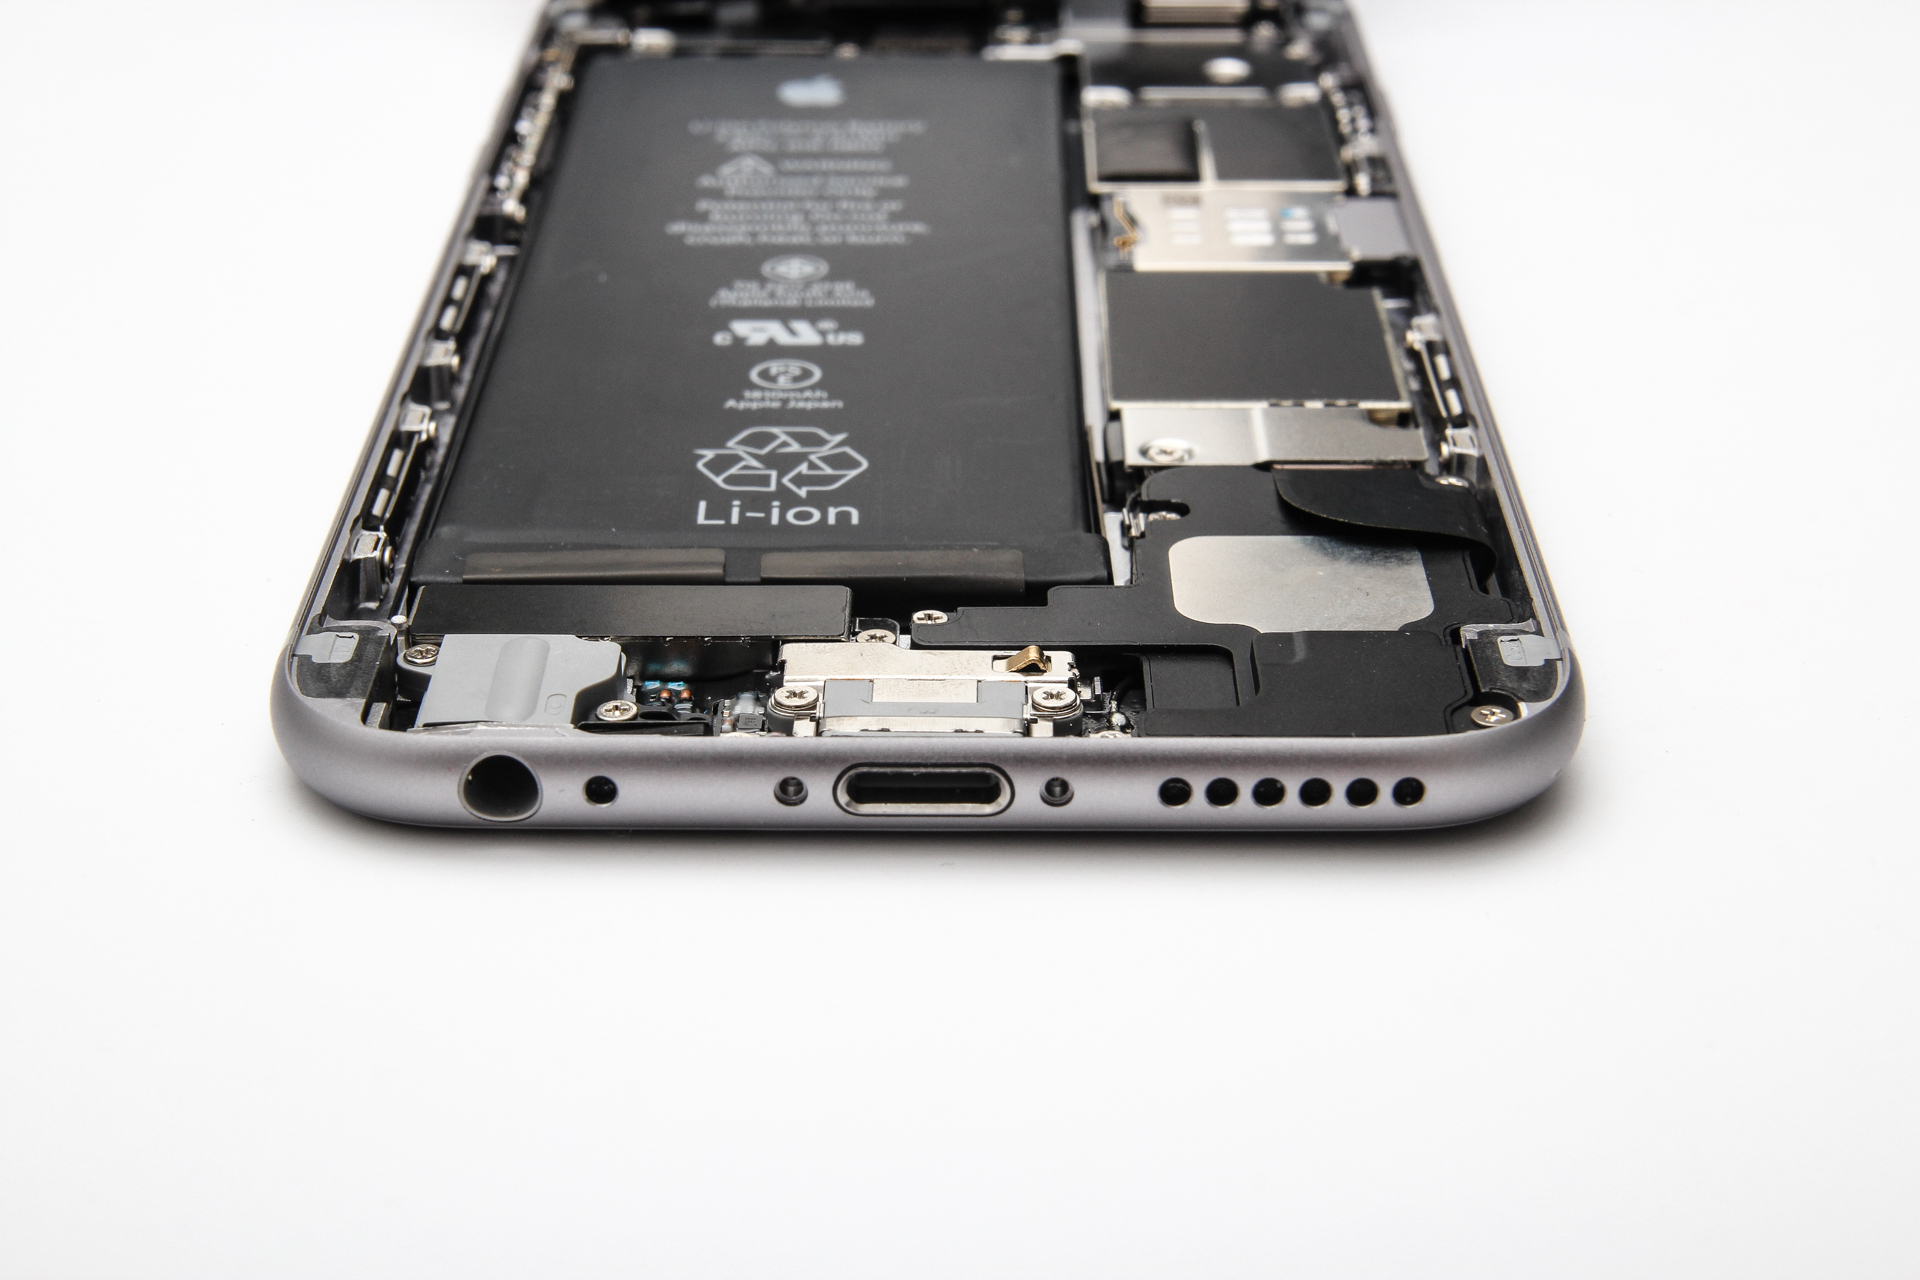 Két gigabájt szupergyors memória az iPhone 6s-ben: a hét másik nagy pletykája, állítólag érezhető változást hoz majd az új modul. Lassan jöhetne is, utoljára az 5s-ben dupláztak memóriát, azóta 1 gigabájt van az iPhone-ban